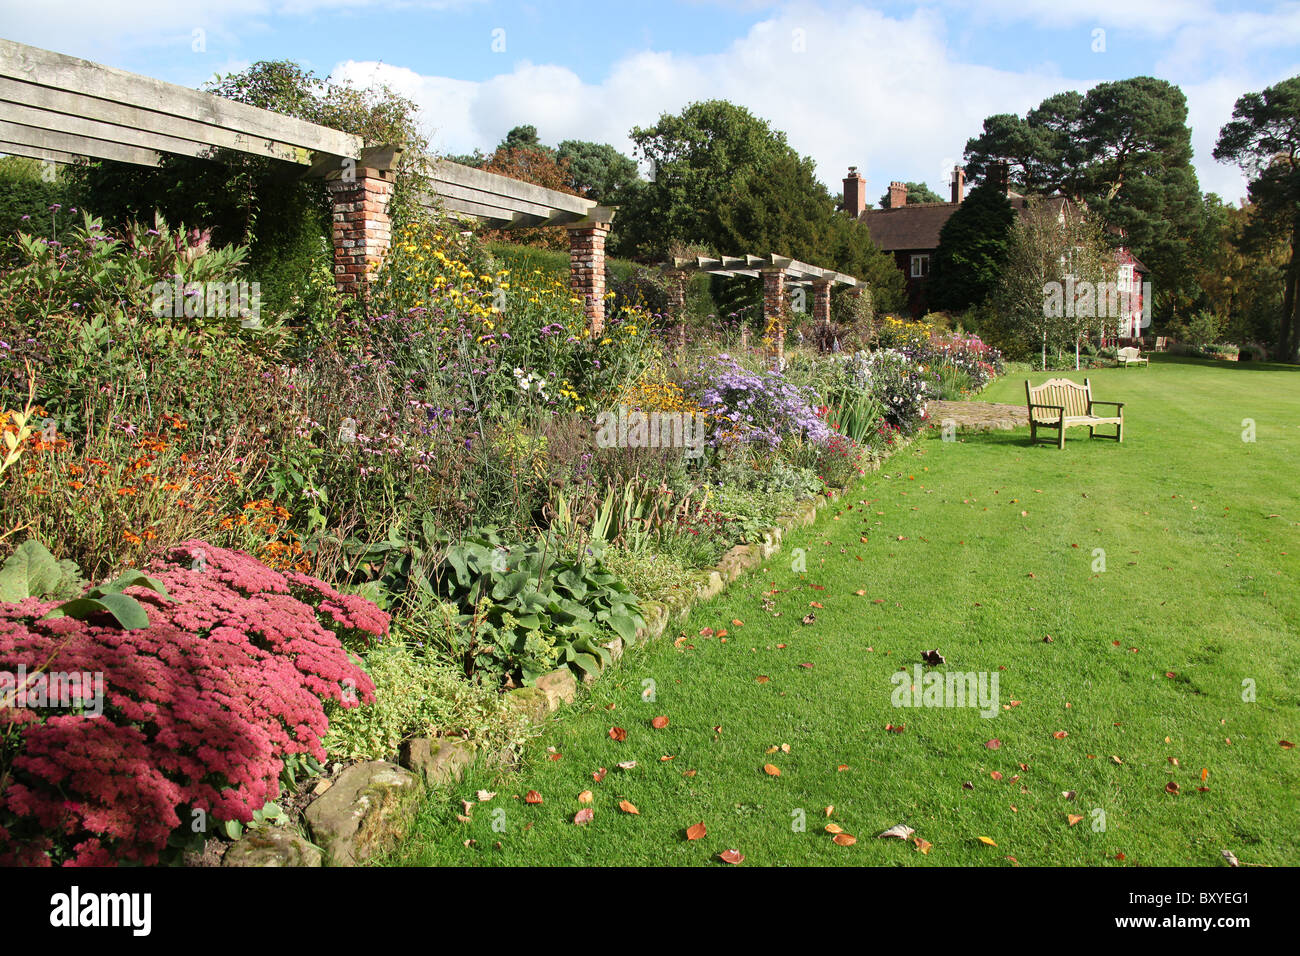 Abbeywood Garten, Cheshire. Malerische herbstliche Ansicht der krautige Grenze innerhalb des Gartens Abbeywood Pergola Fuß. Stockfoto